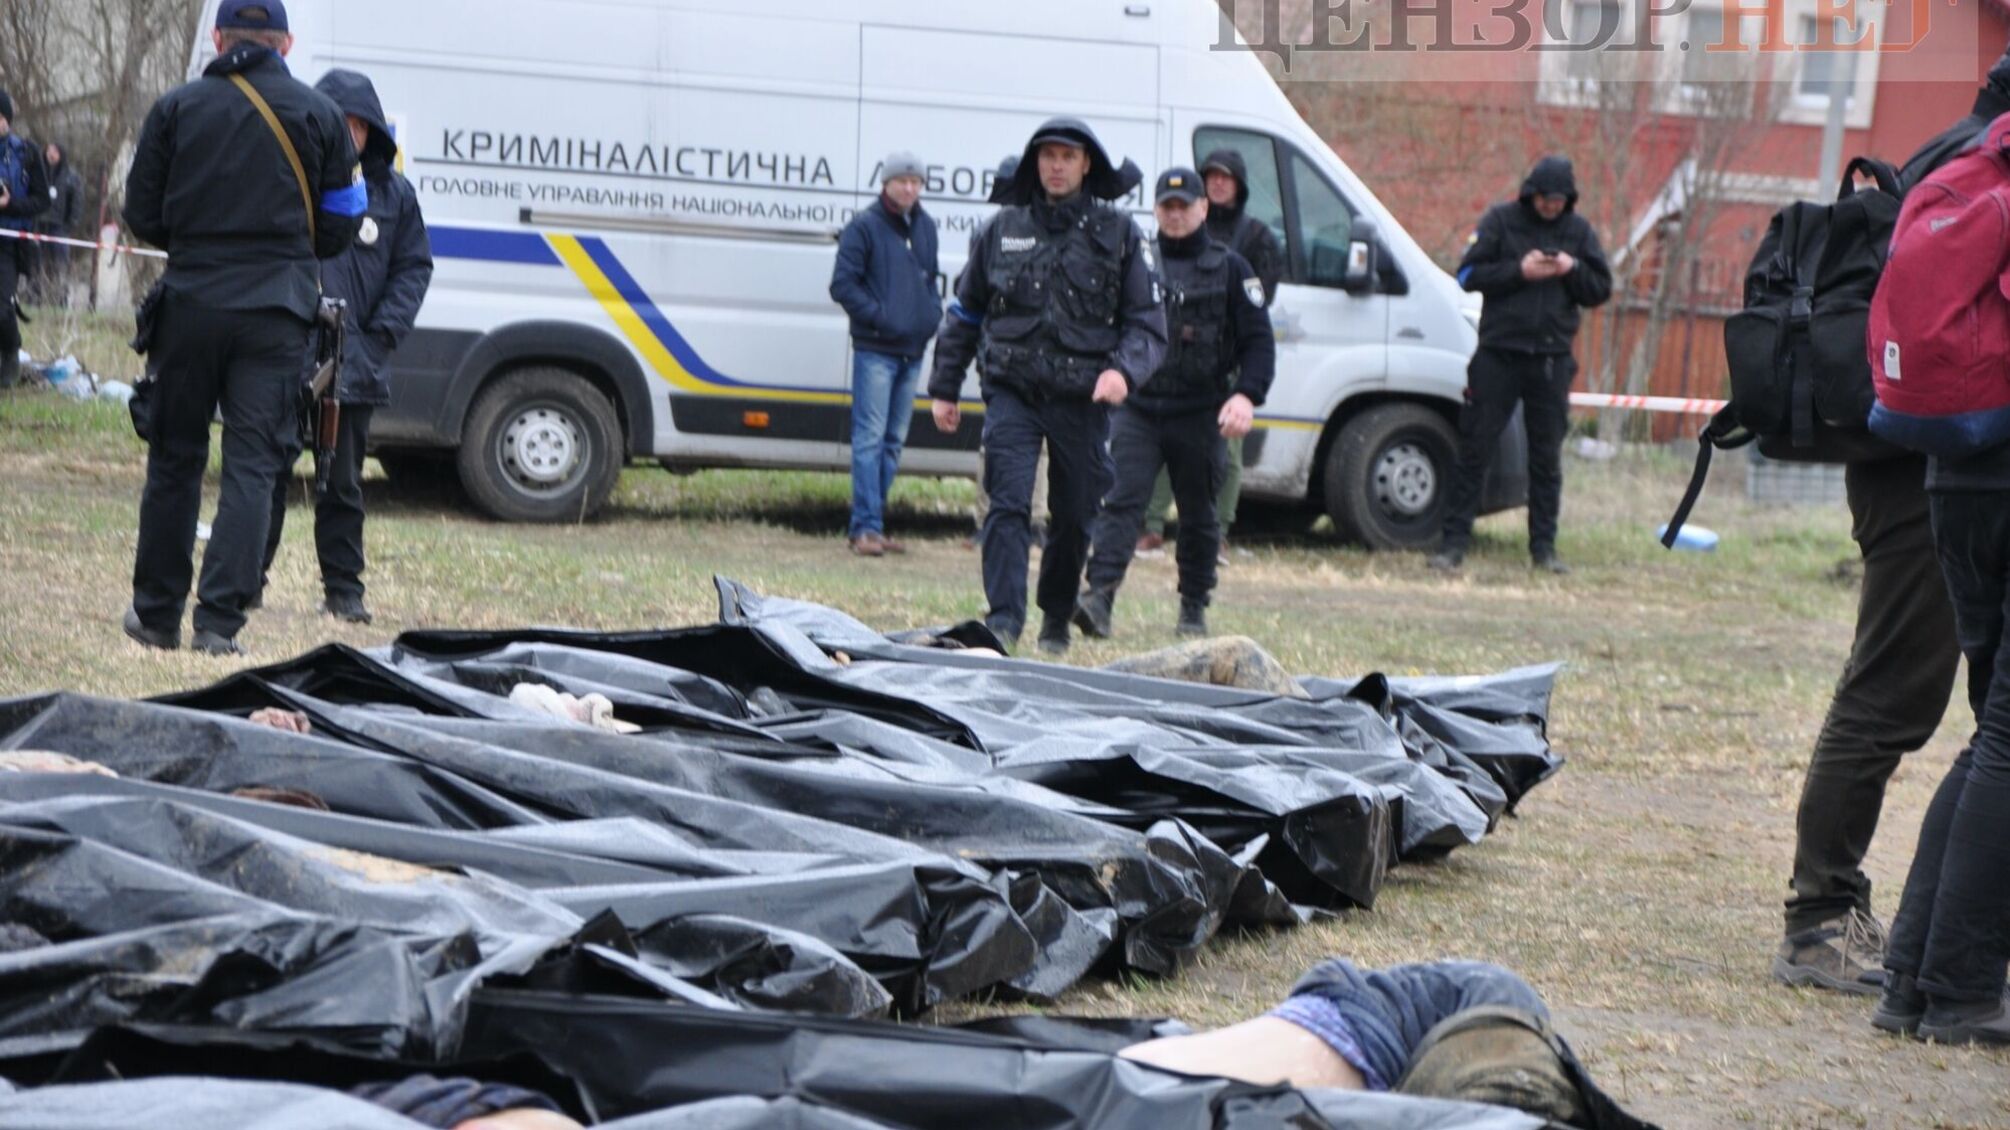 тела замученных украинцев